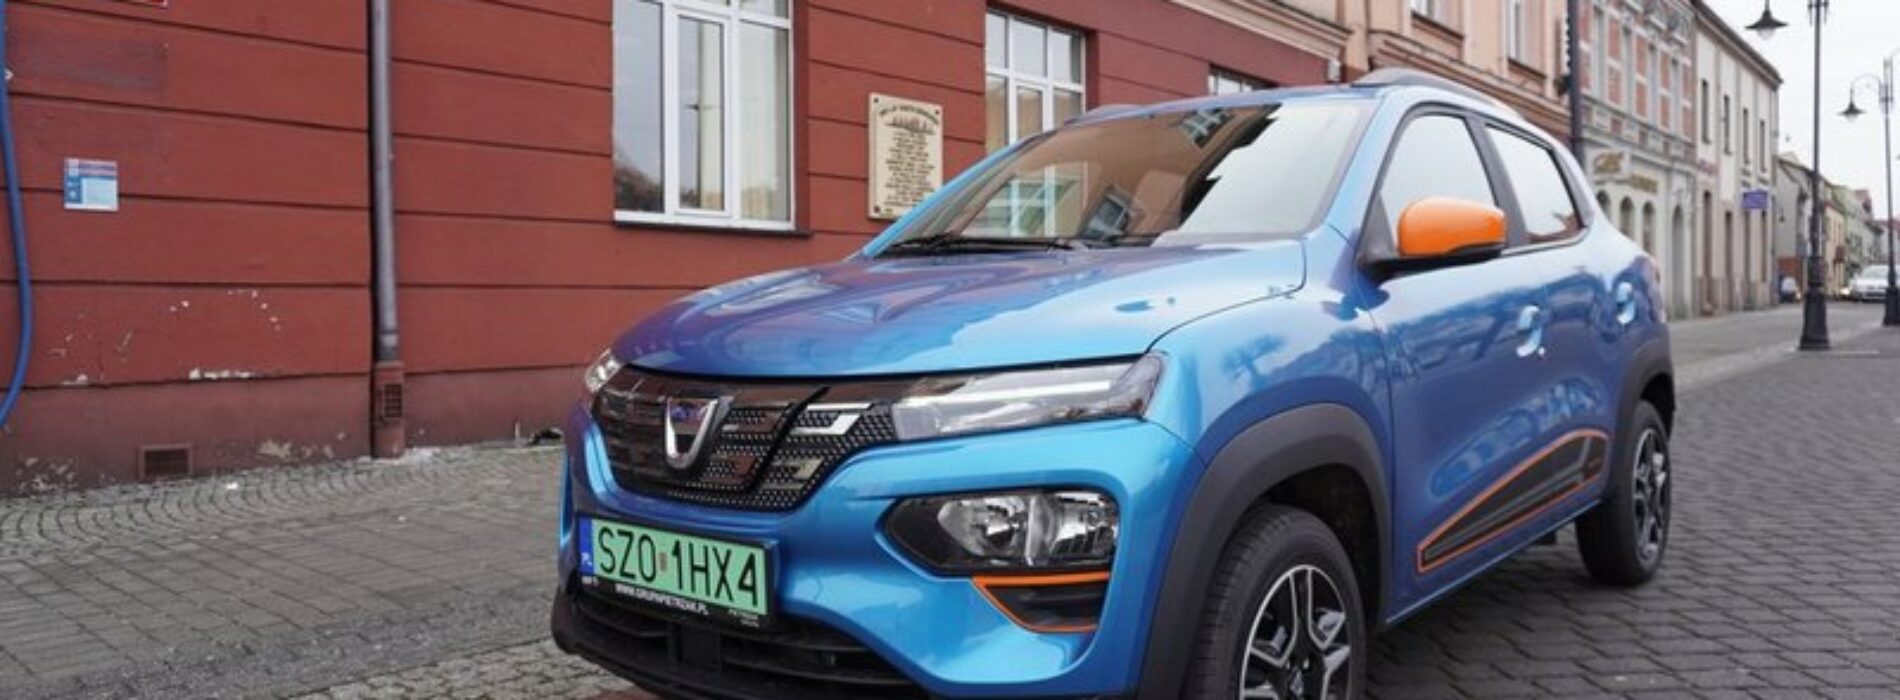 Pierwszy samochód elektryczny w Urzędzie Miasta Żory